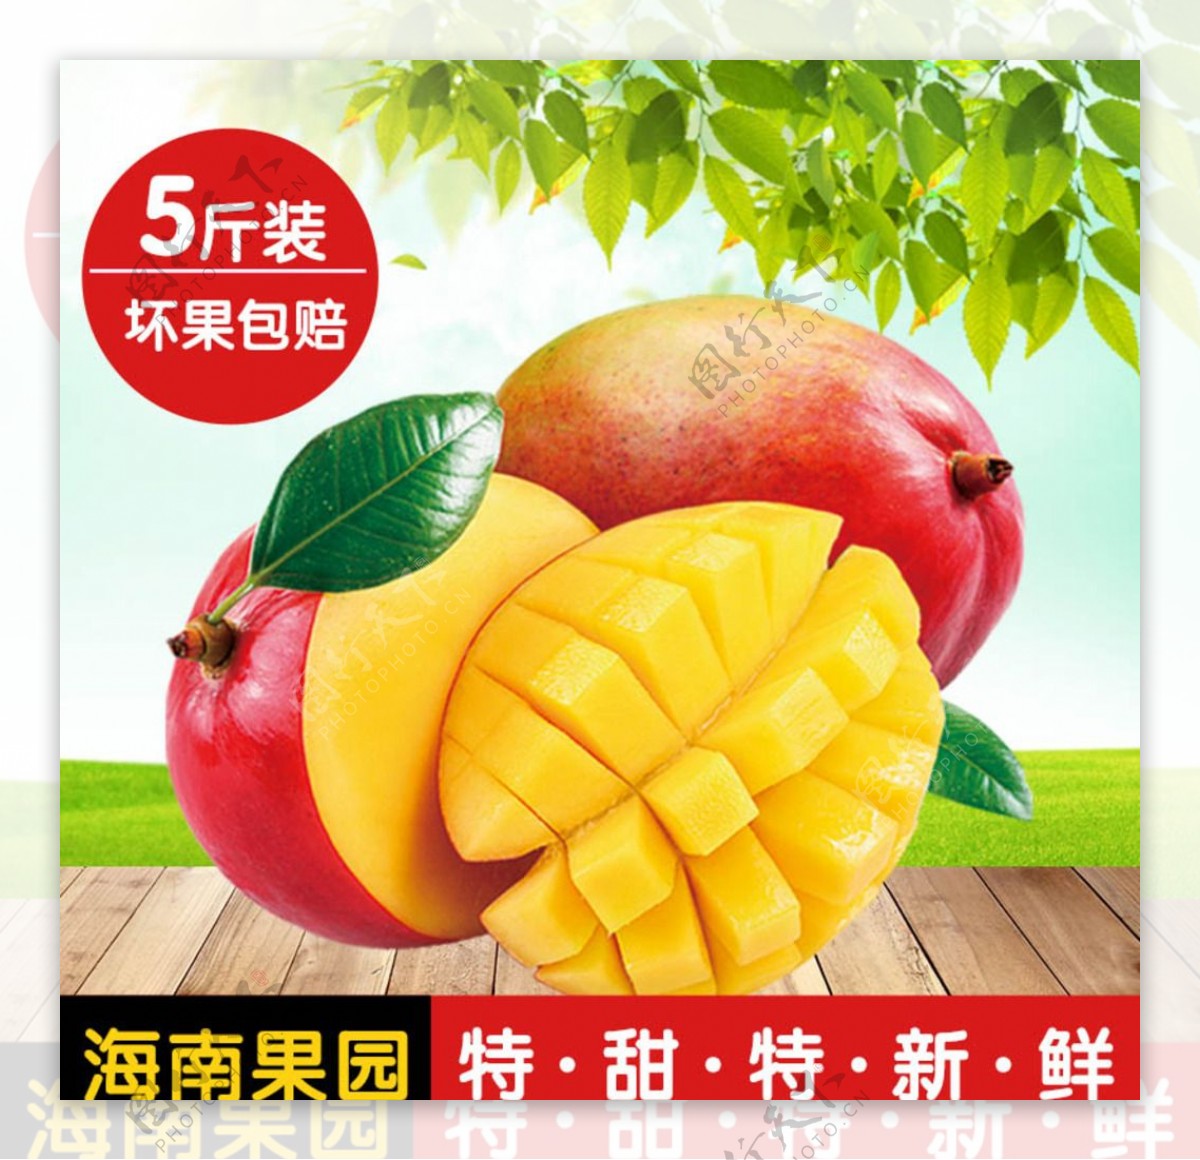 芒果水果海报